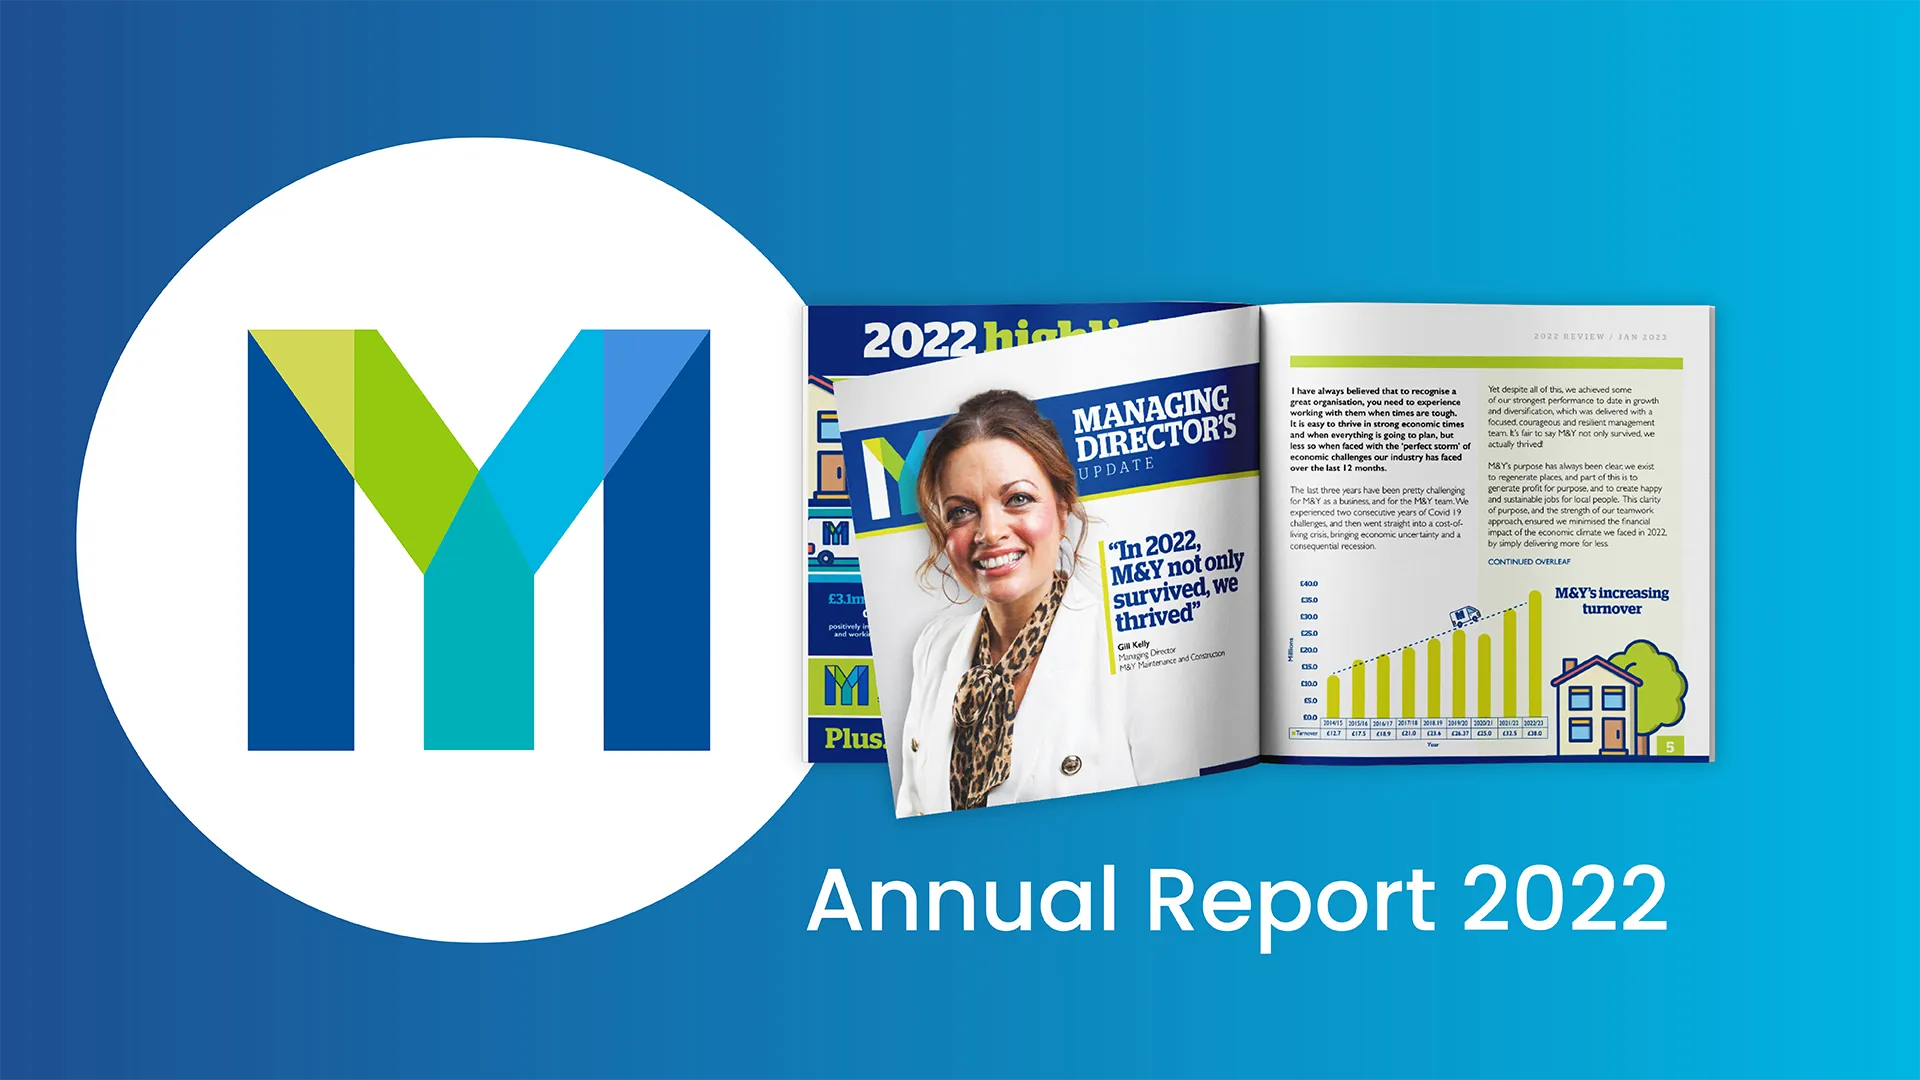 Annual report 2022 graphic